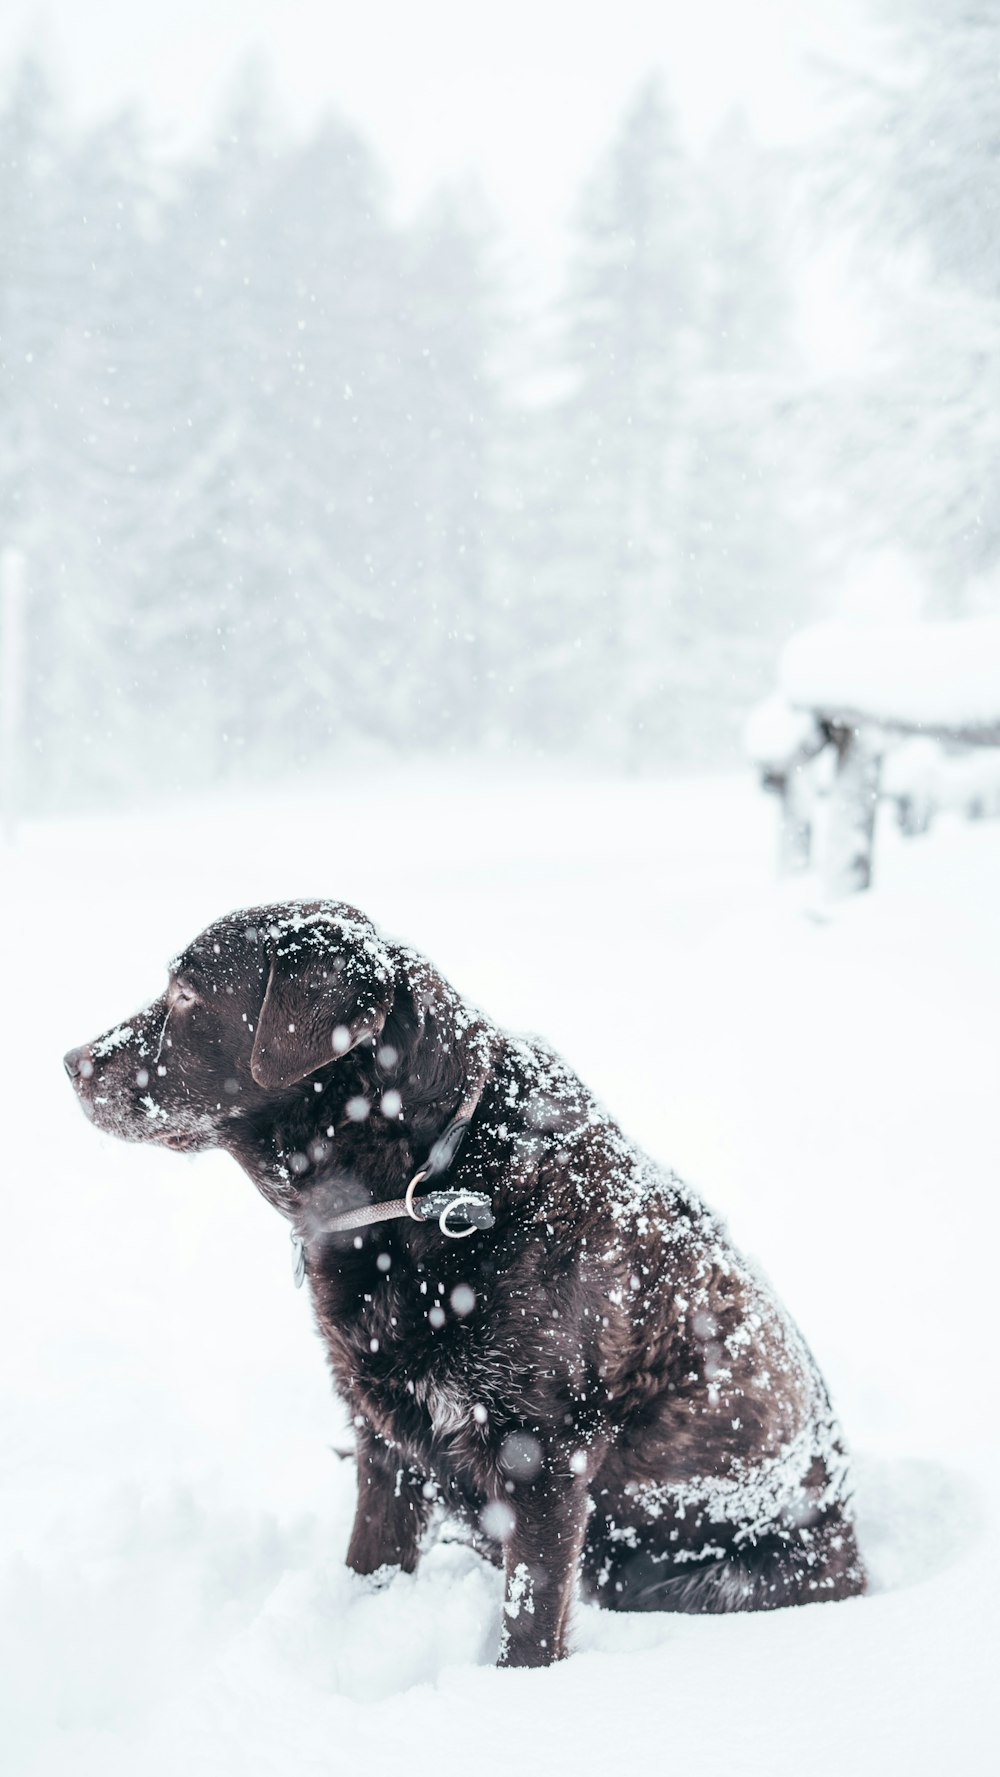 Labrador retriever cioccolato adulto seduto fuori con la neve